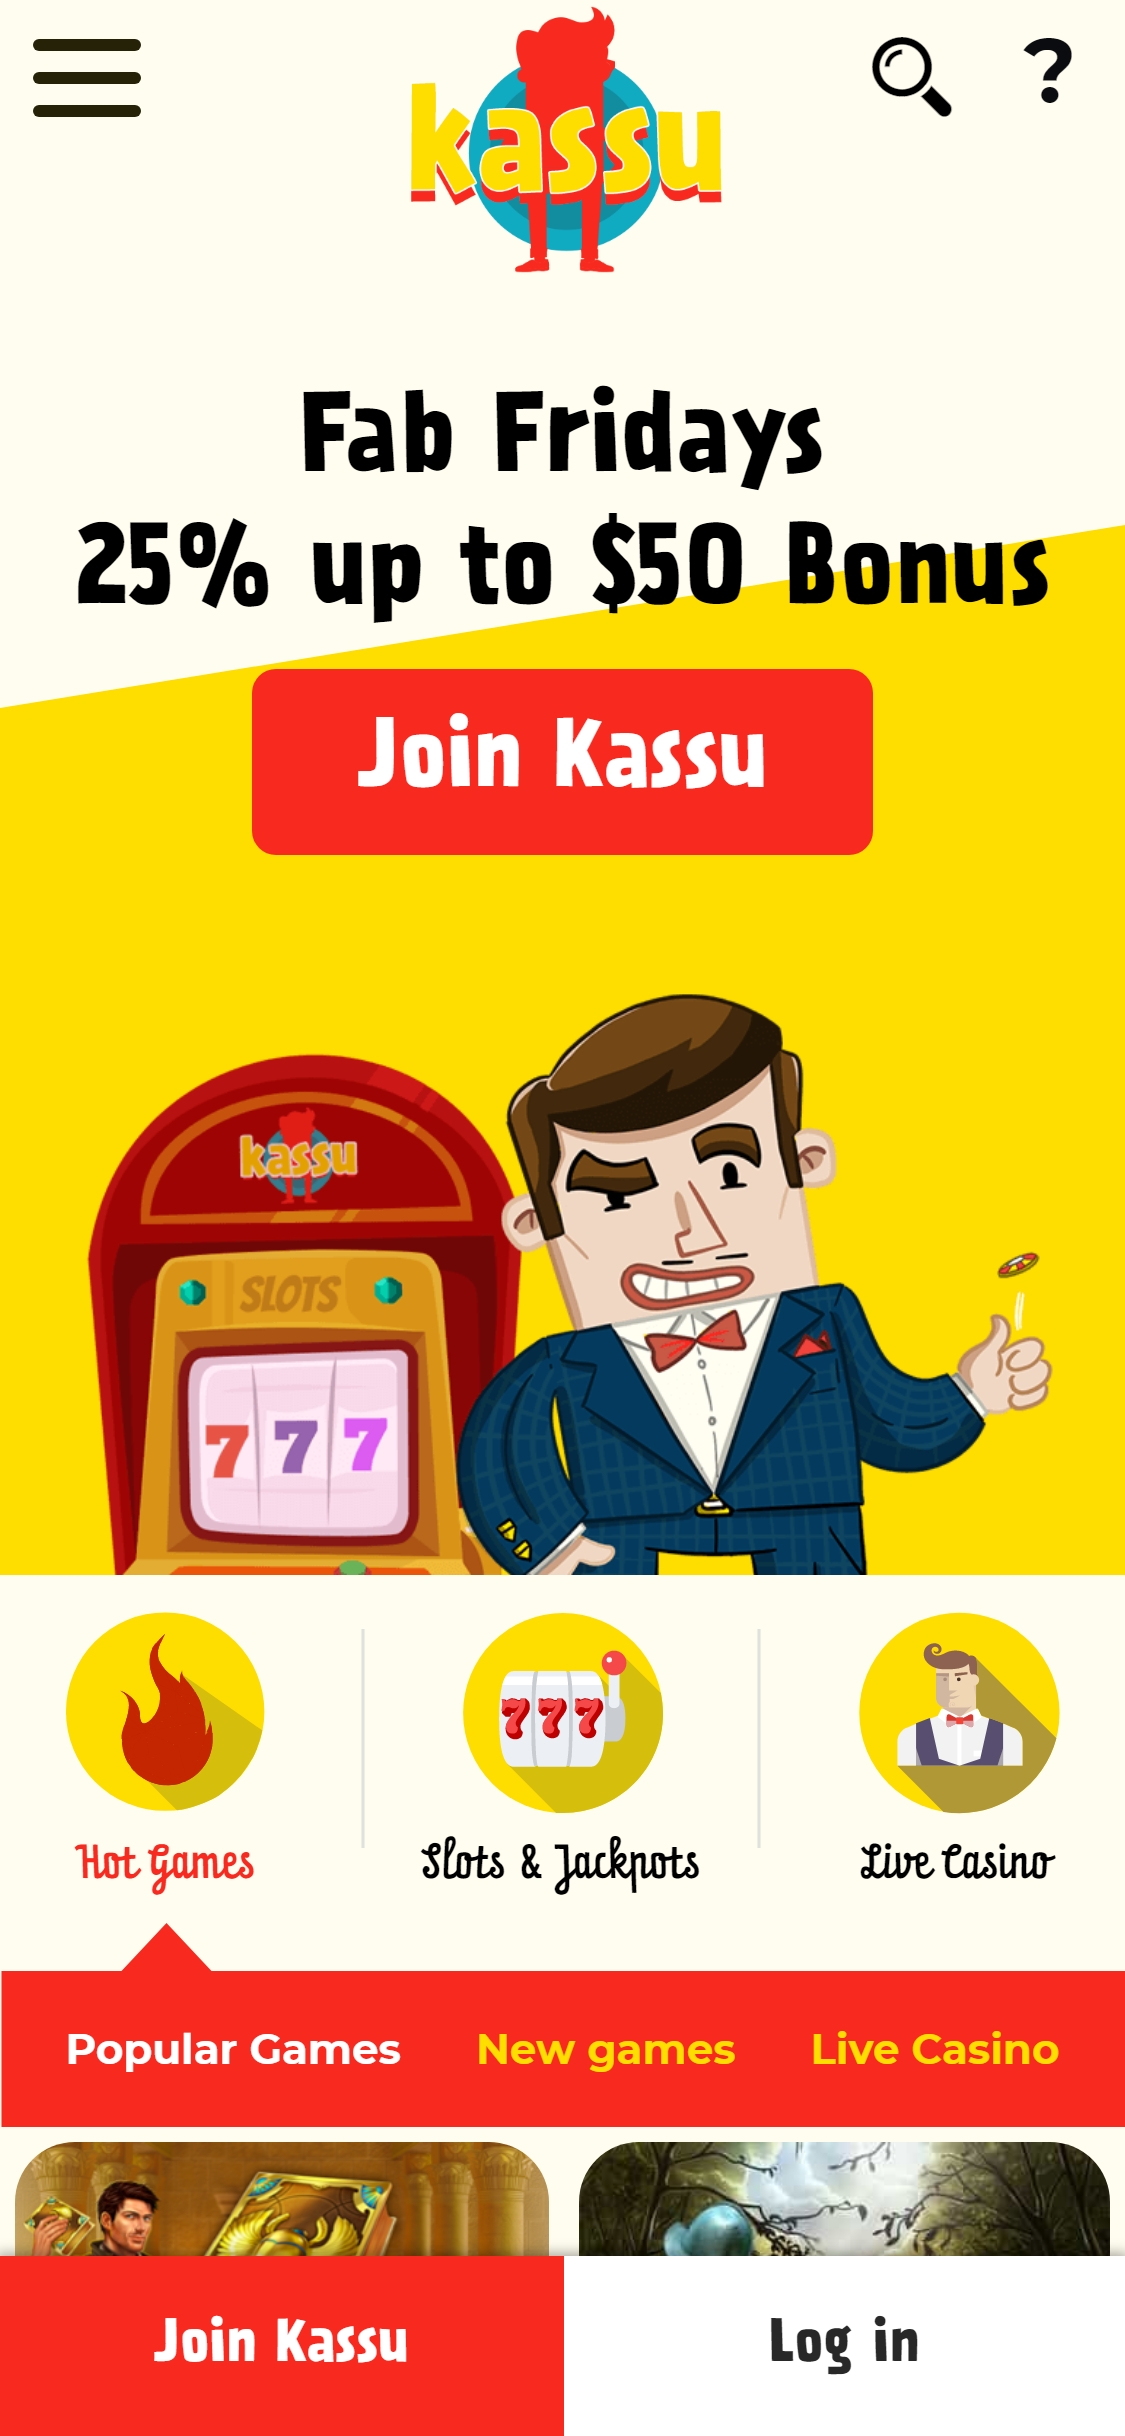 Kassu Casino Mobile Review